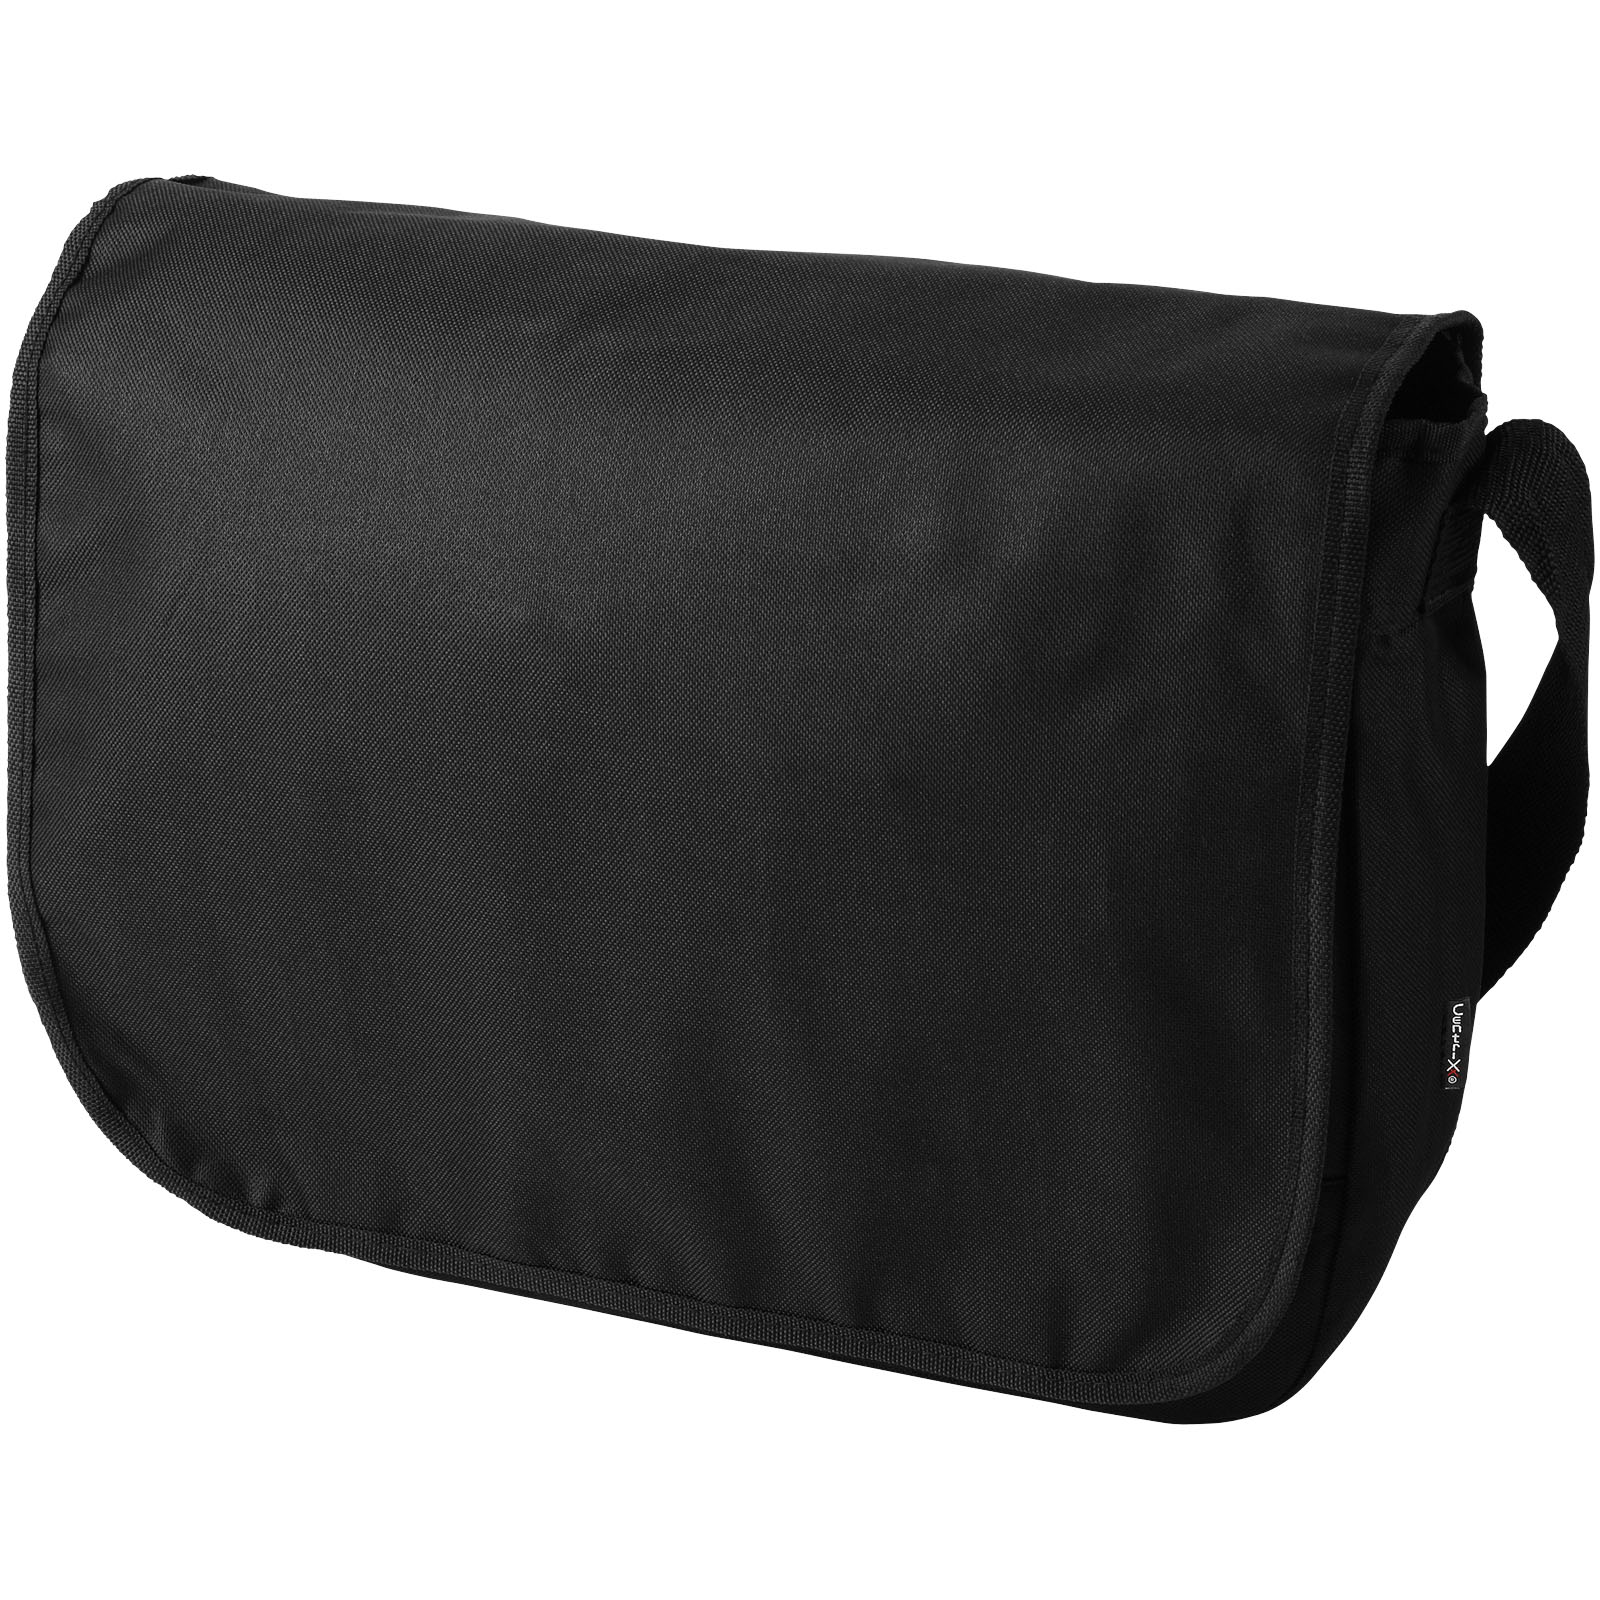 Adjustable Flap Bag - Little Snoring - Fleckney